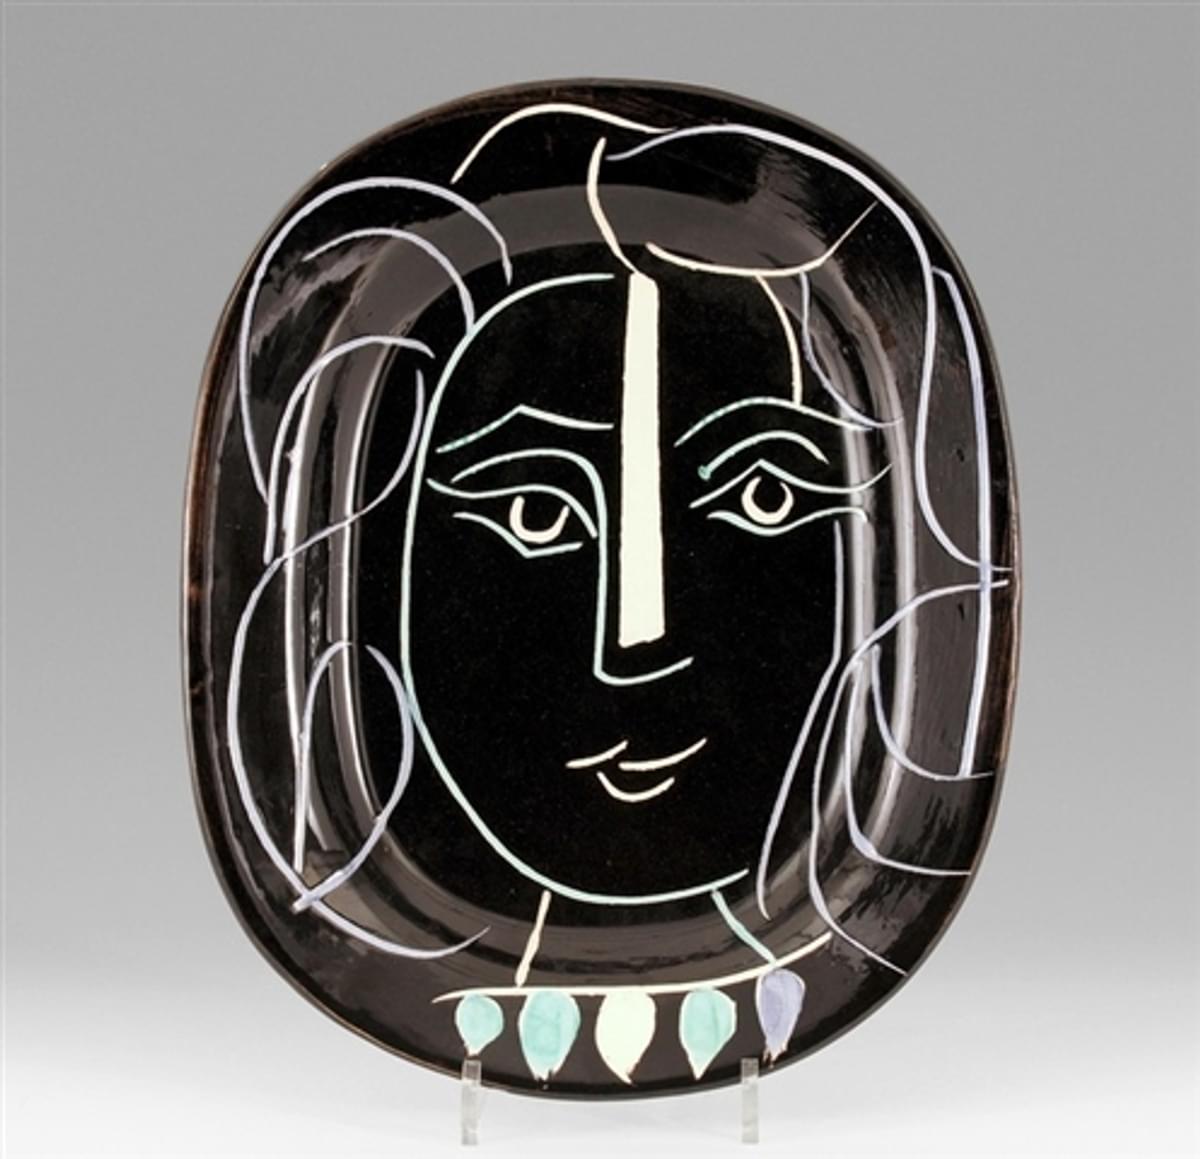 Pablo Picasso Visage de Femme original glazed ceramic plate from the edition of 400 for sale